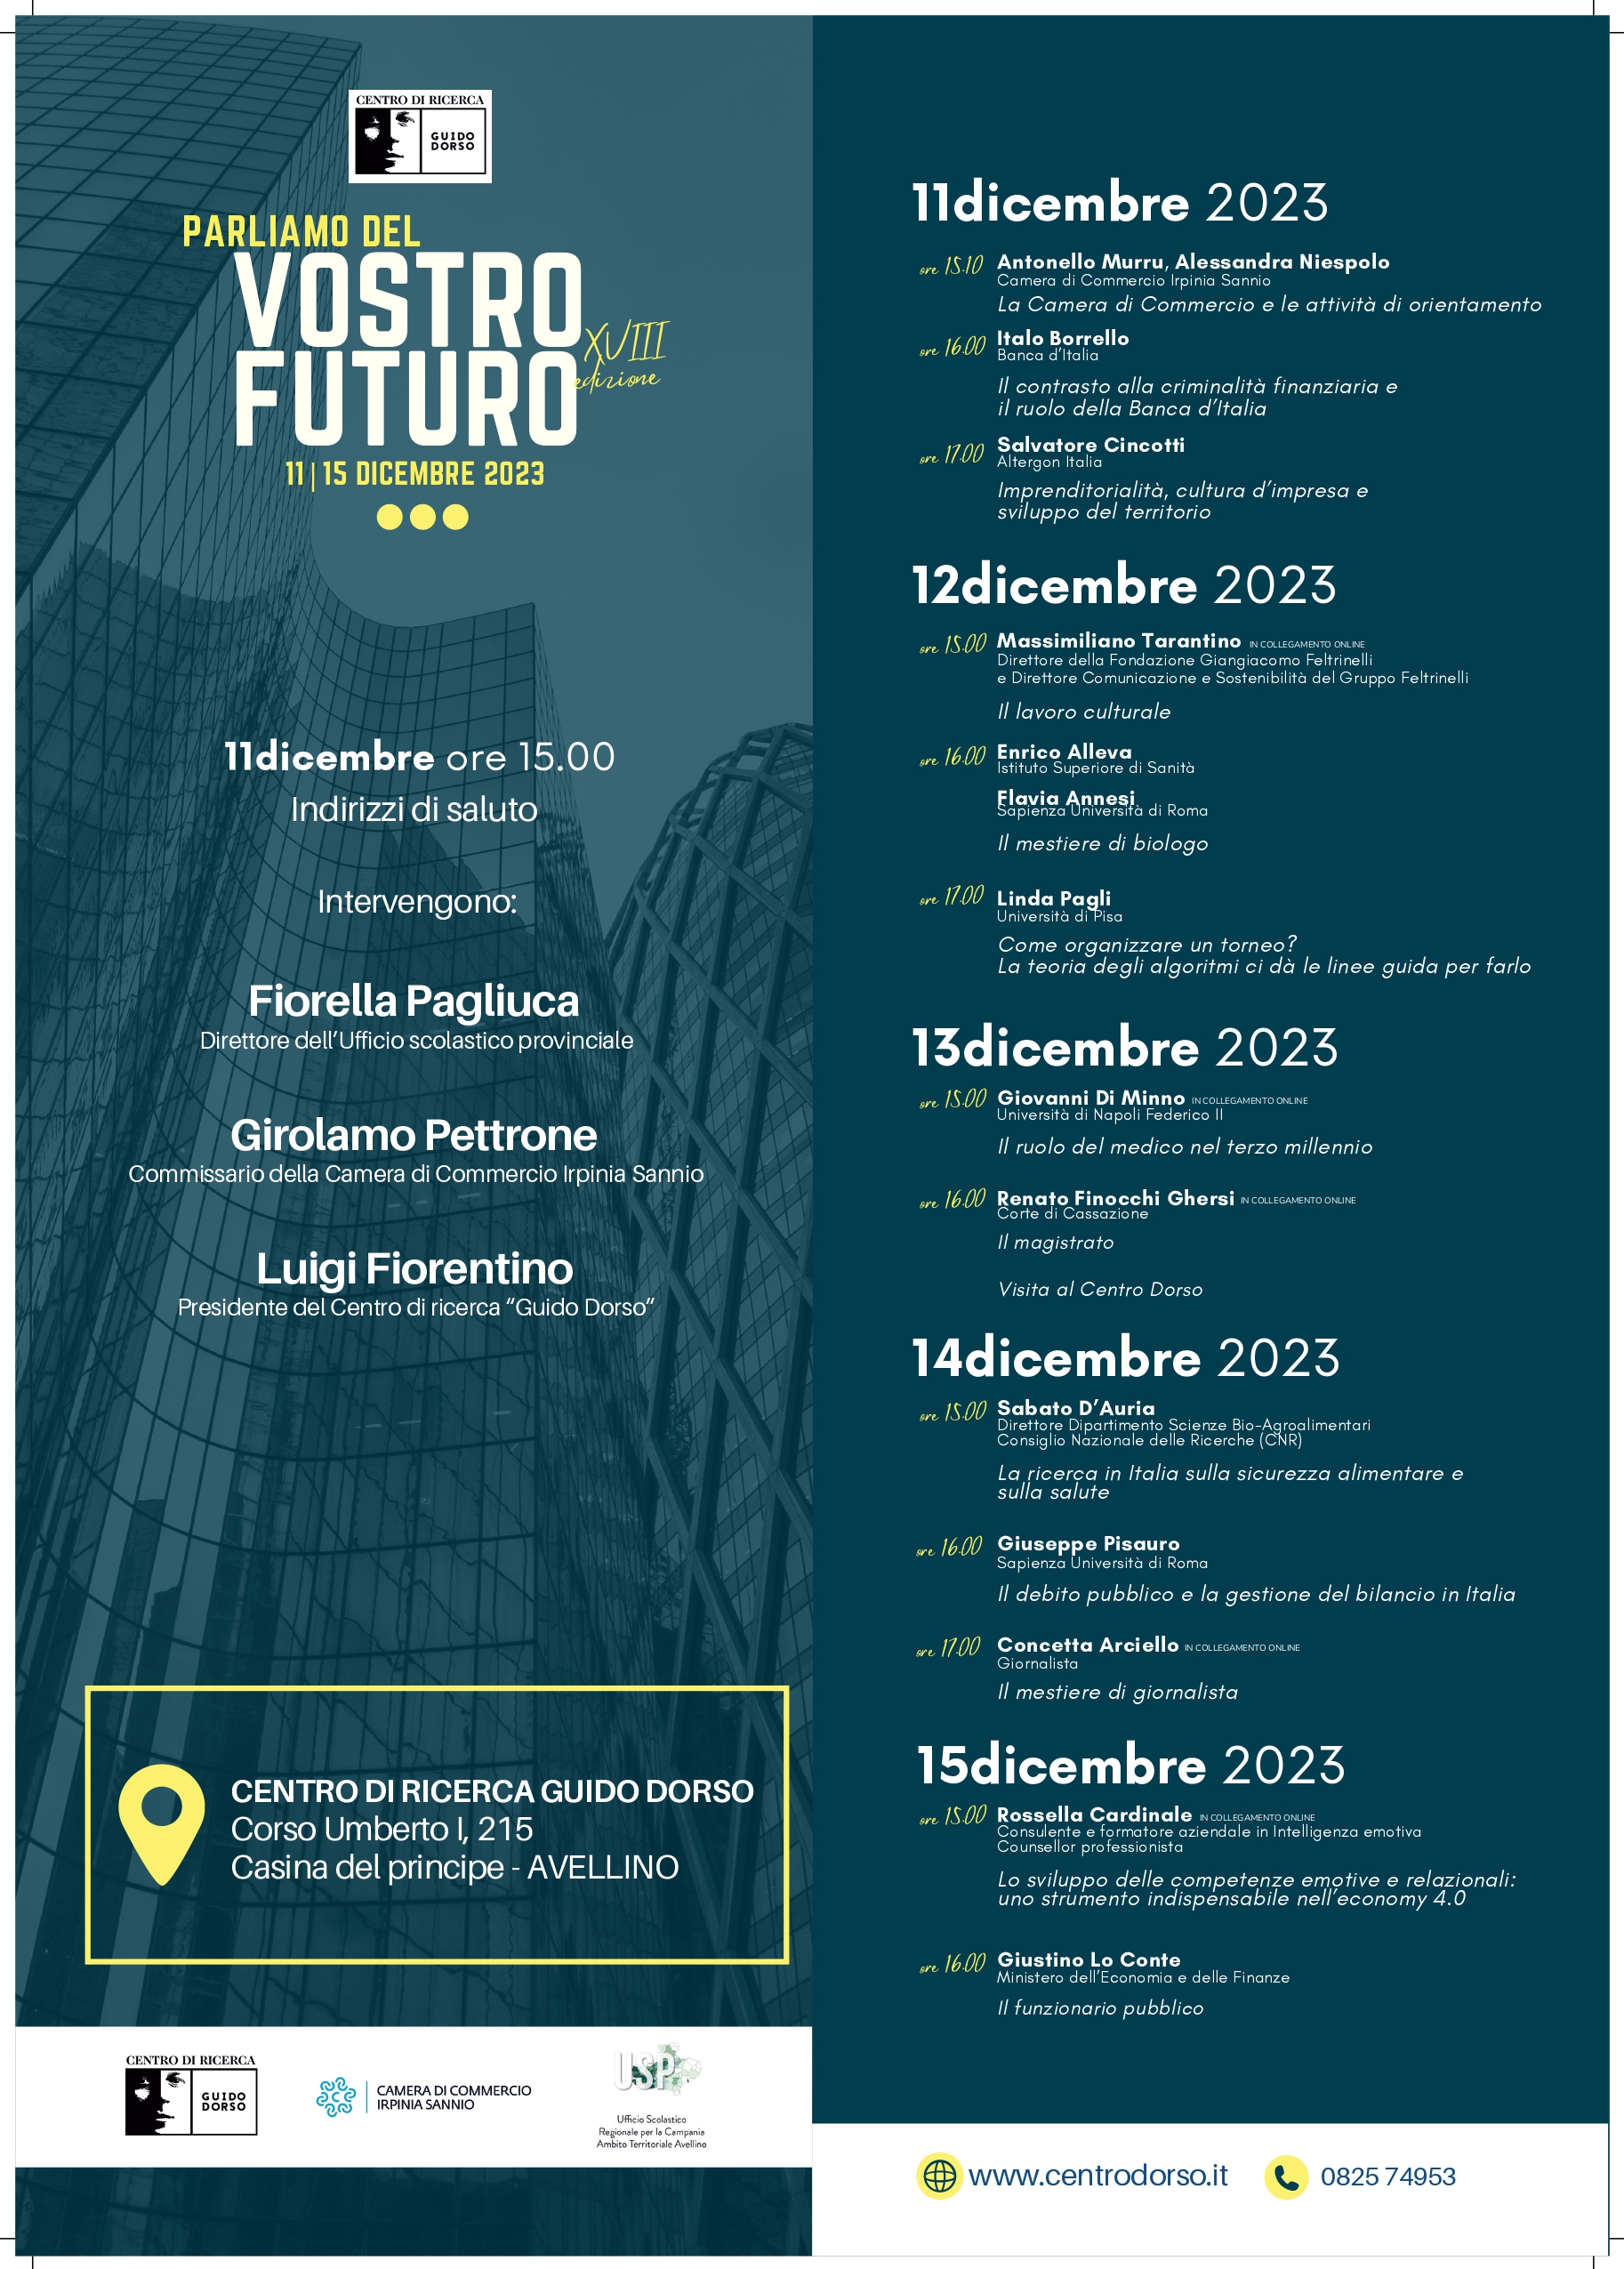 Parliamo del vostro futuro 2023 @ Avellino